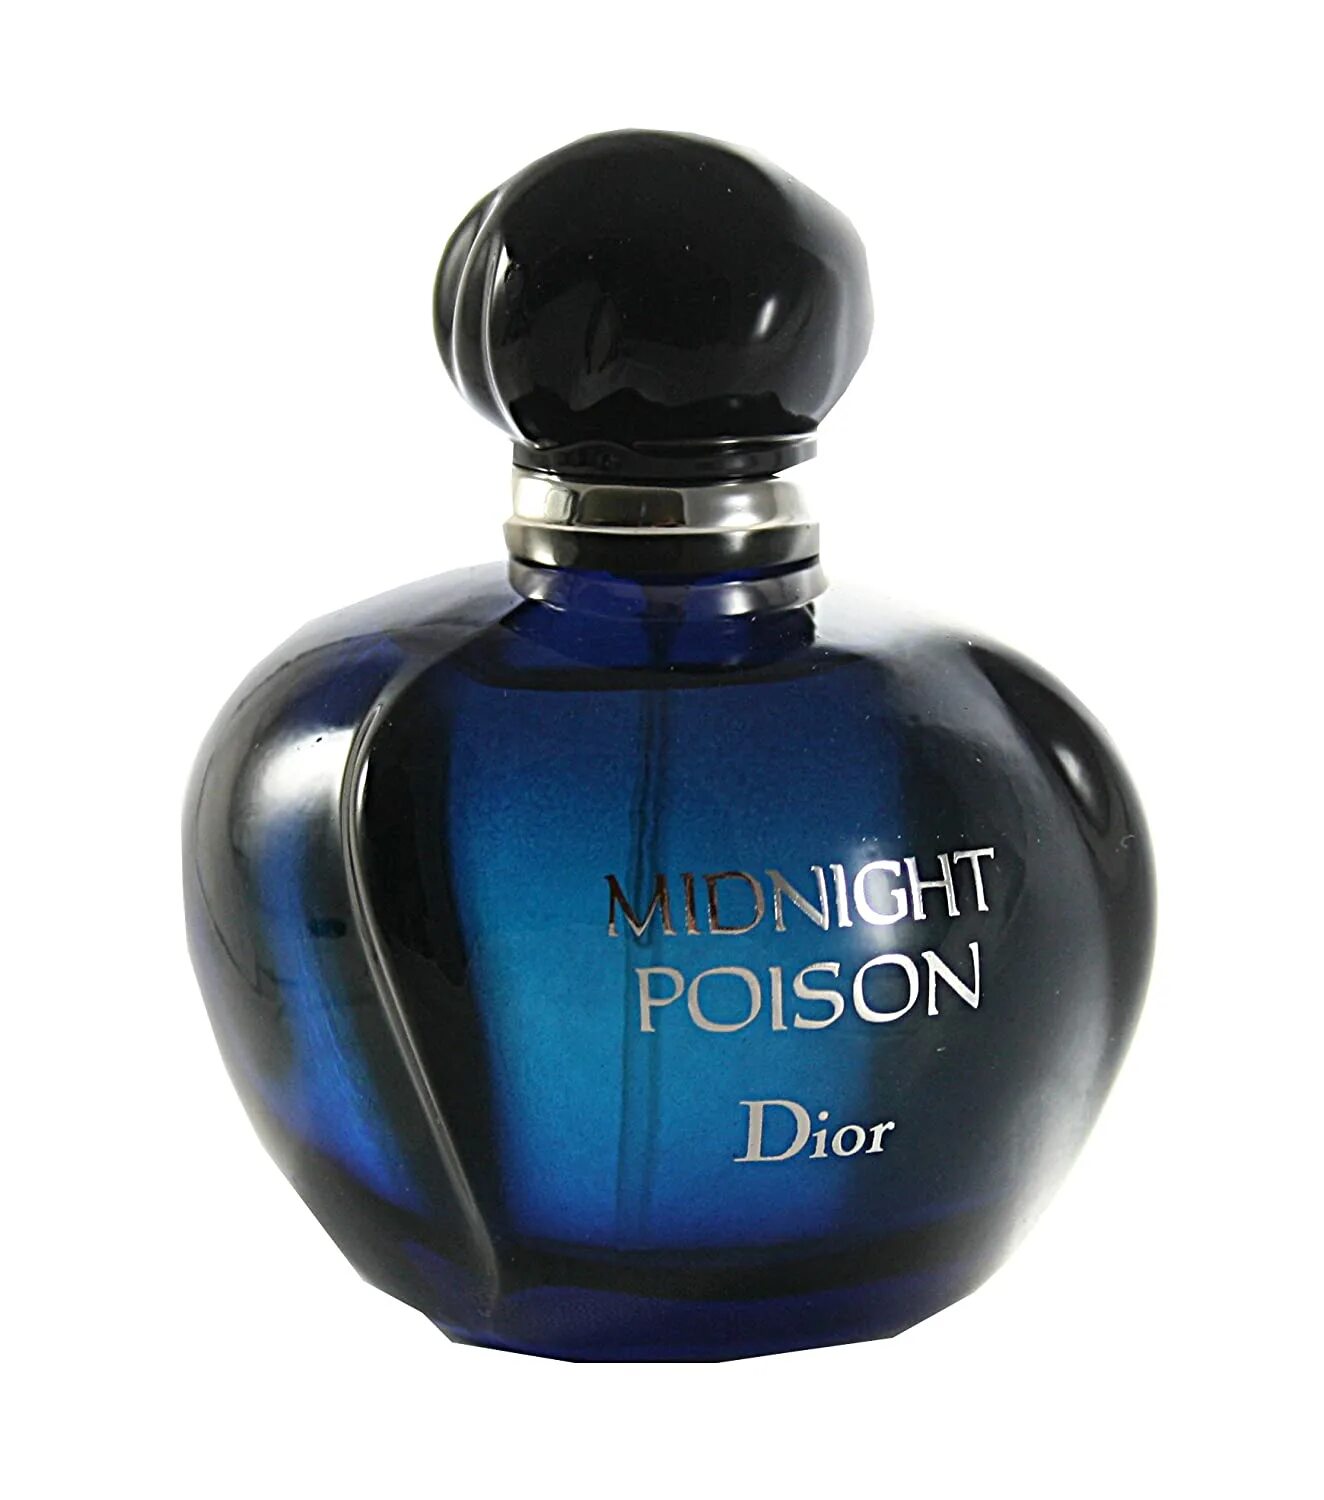 Миднайт пуазон. Духи Christian Dior Midnight Poison. Dior Midnight Poison 100ml EDP. Midnight Poison 100 мл. Dior parfumes / Dior parfumes/Christian Dior Midnight Poison/100 мл.